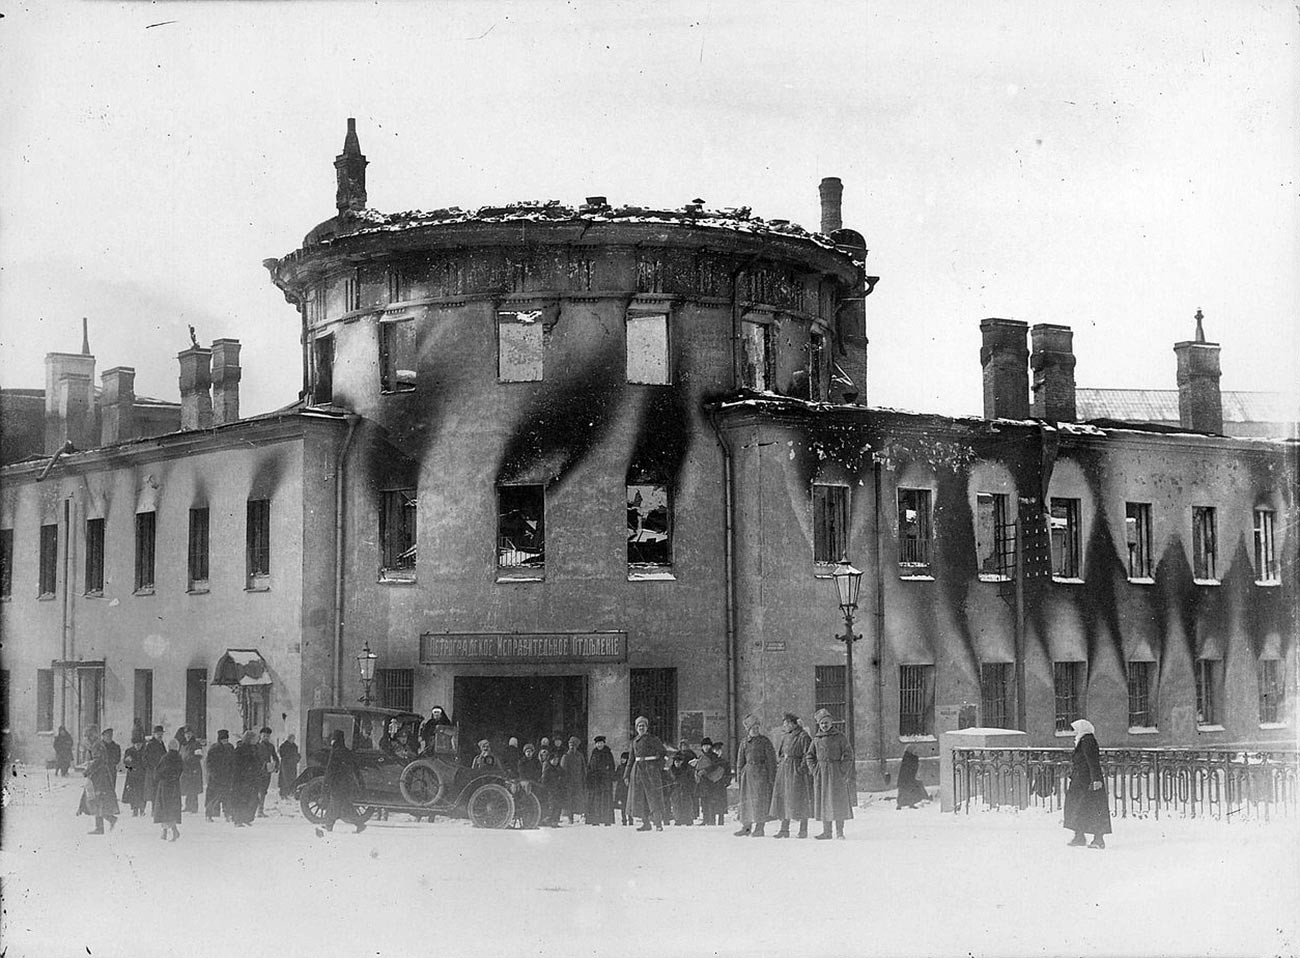 Kastil Lithuania, salah satu penjara Petrograd yang dibakar oleh para perusuh.